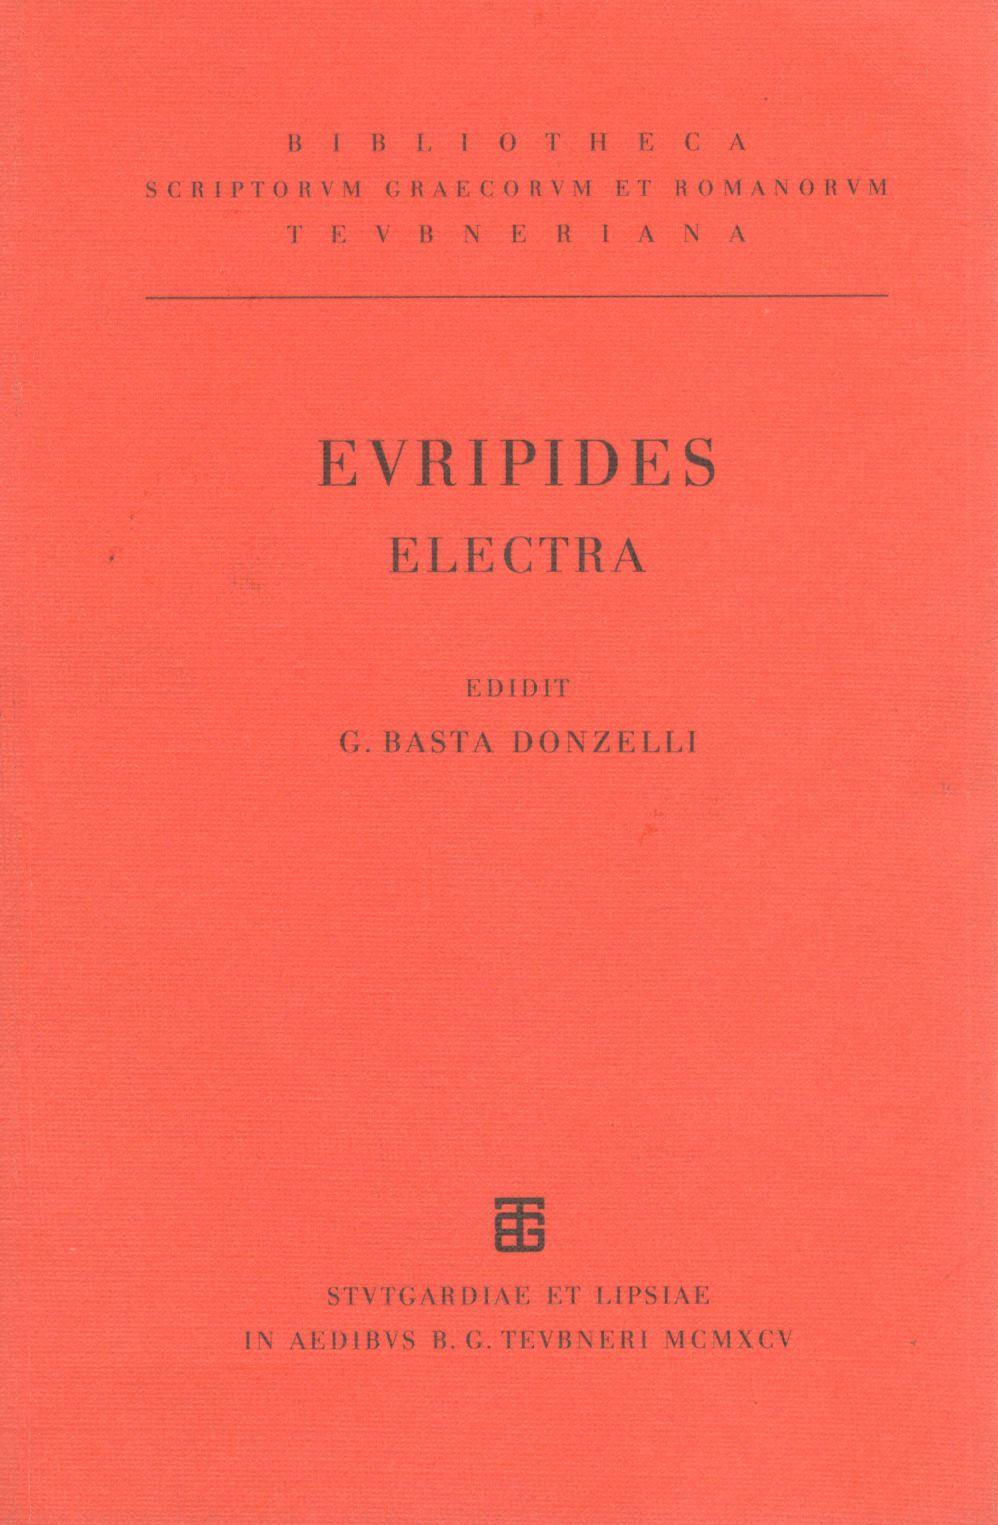 EURIPIDIS ELECTRA